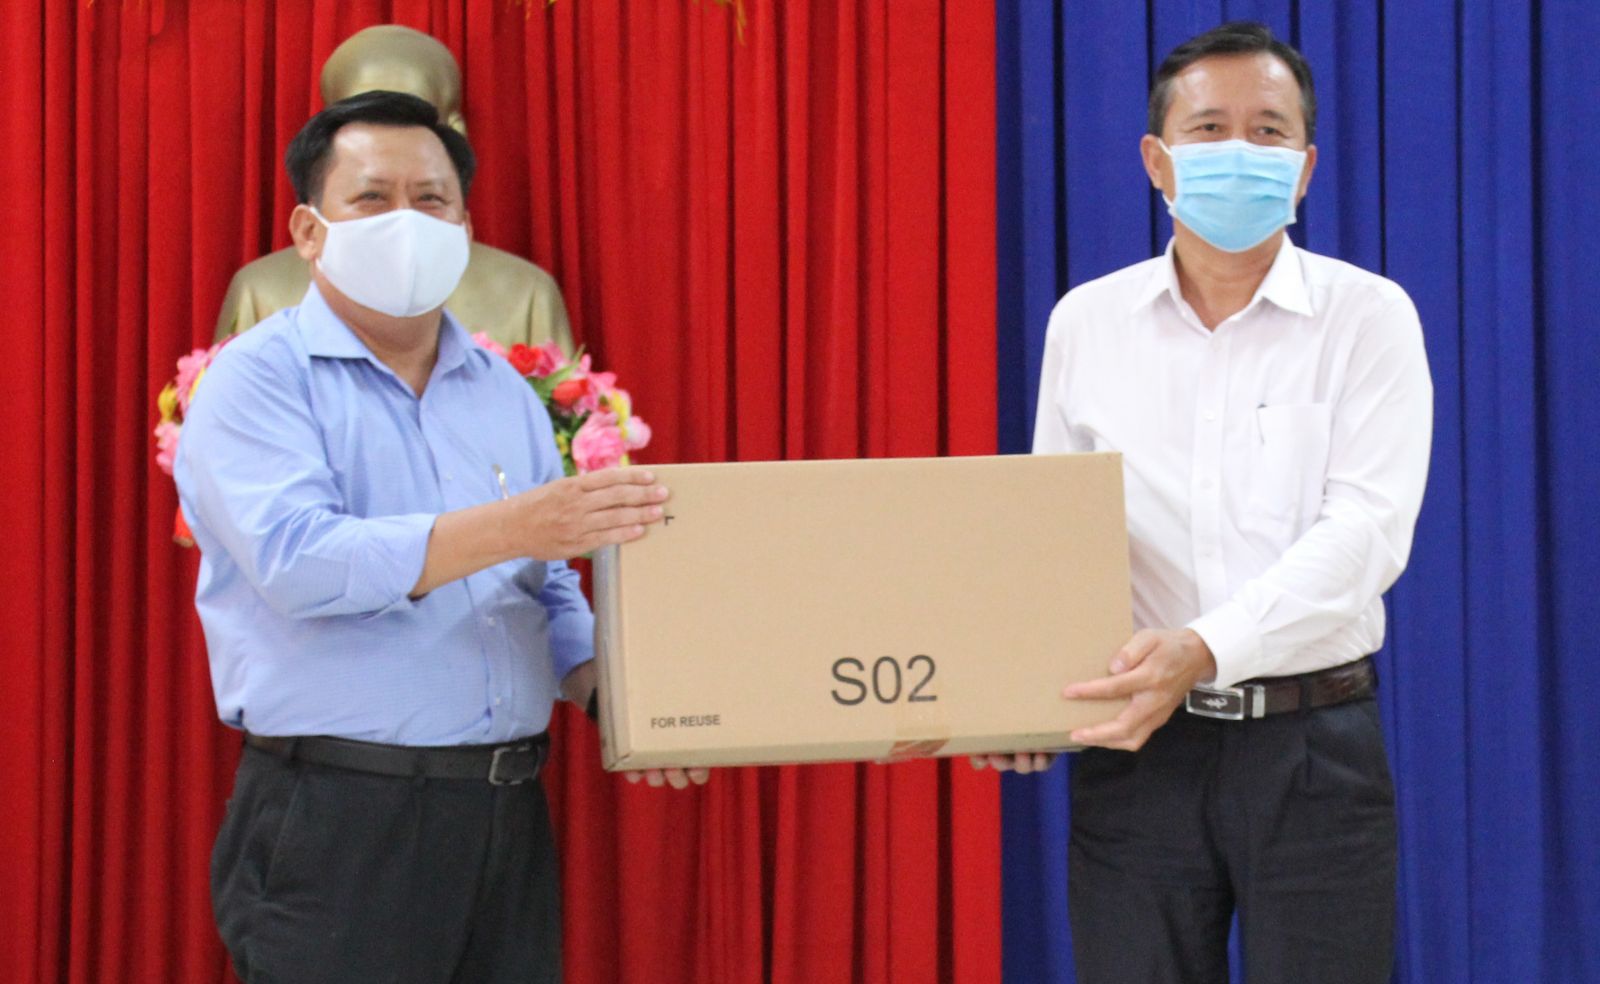 Giám đốc Sở Kế hoạch và Đầu tư - Huỳnh Văn Sơn (bên trái) trao 4.000 khẩu trang cho Phó Chủ tịch UBND TP. Tân An - Nguyễn Quang Thái